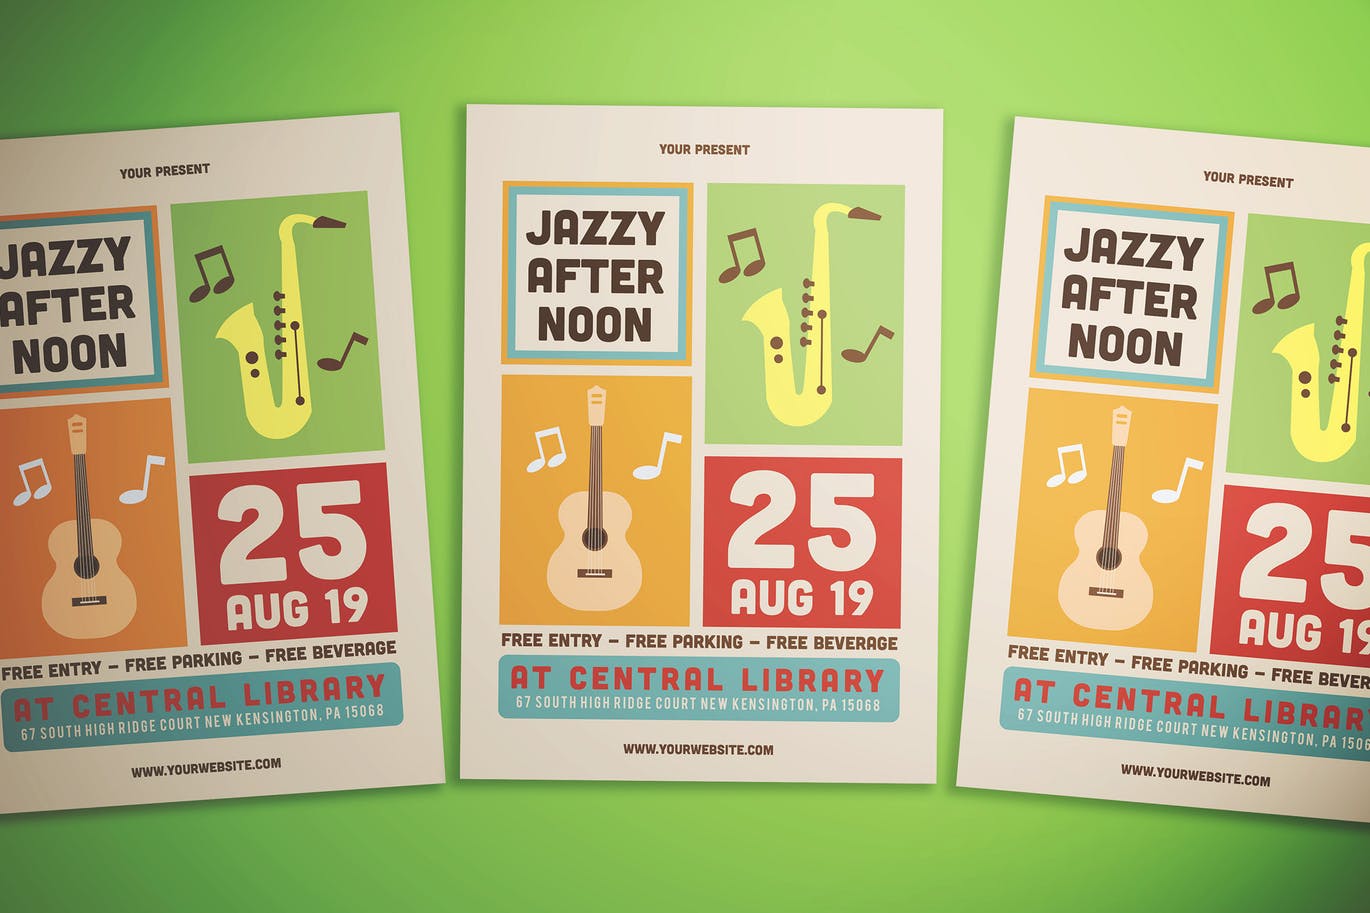 A jazz music event flyer template